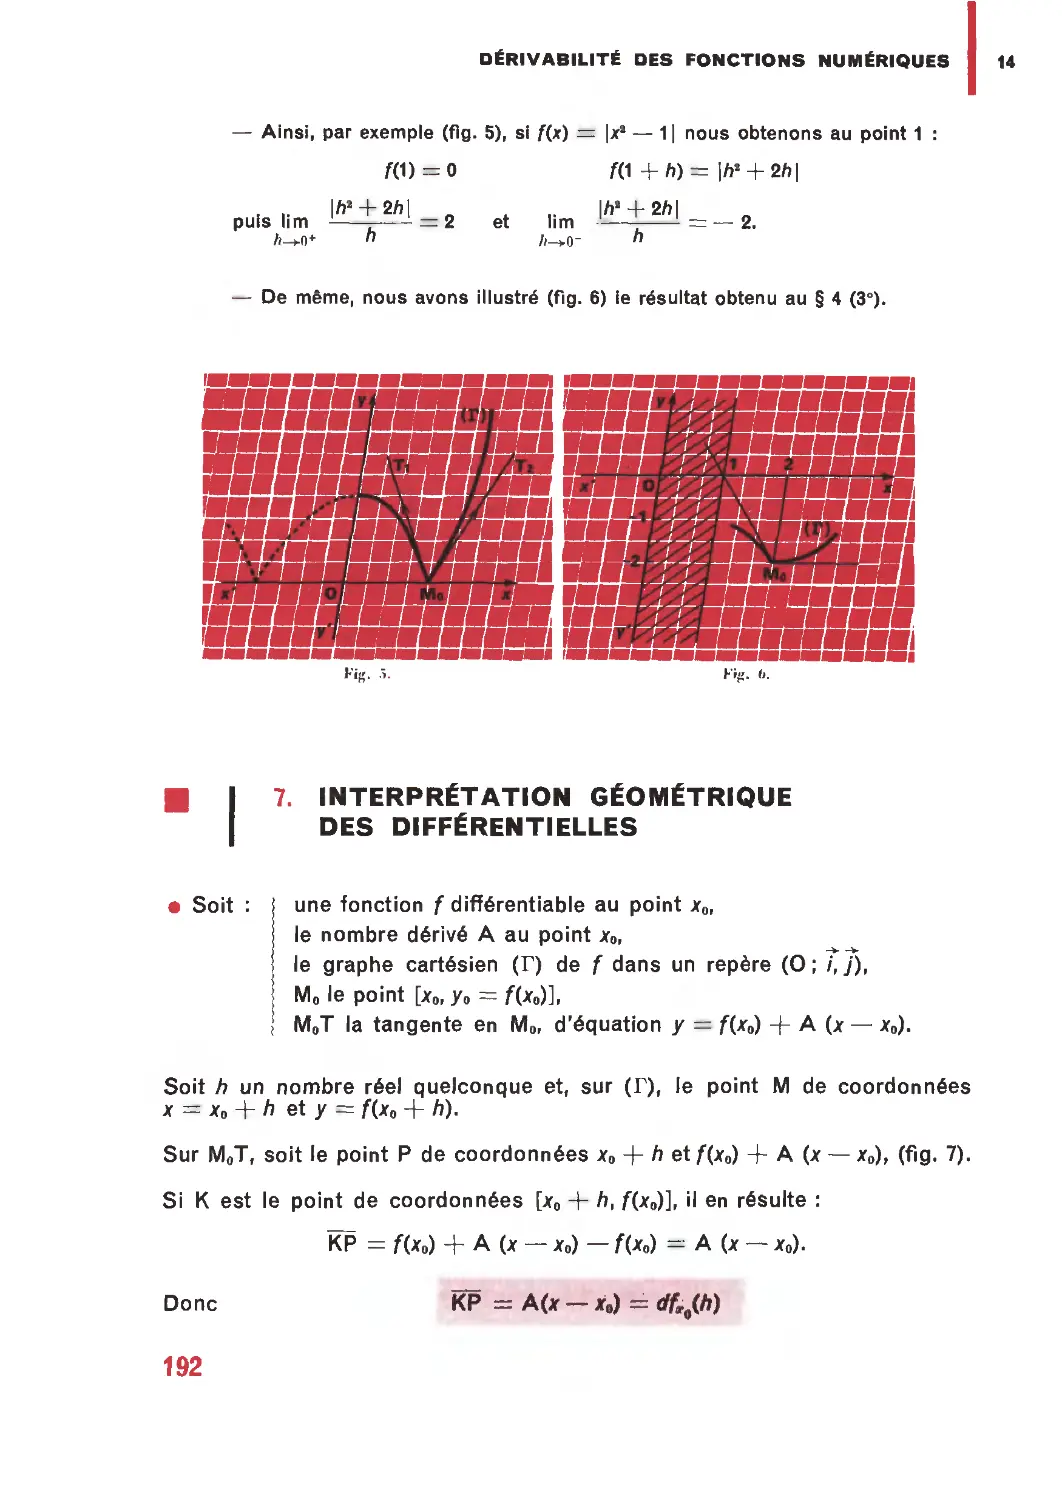 7. Interprétation géométrique des différentielles